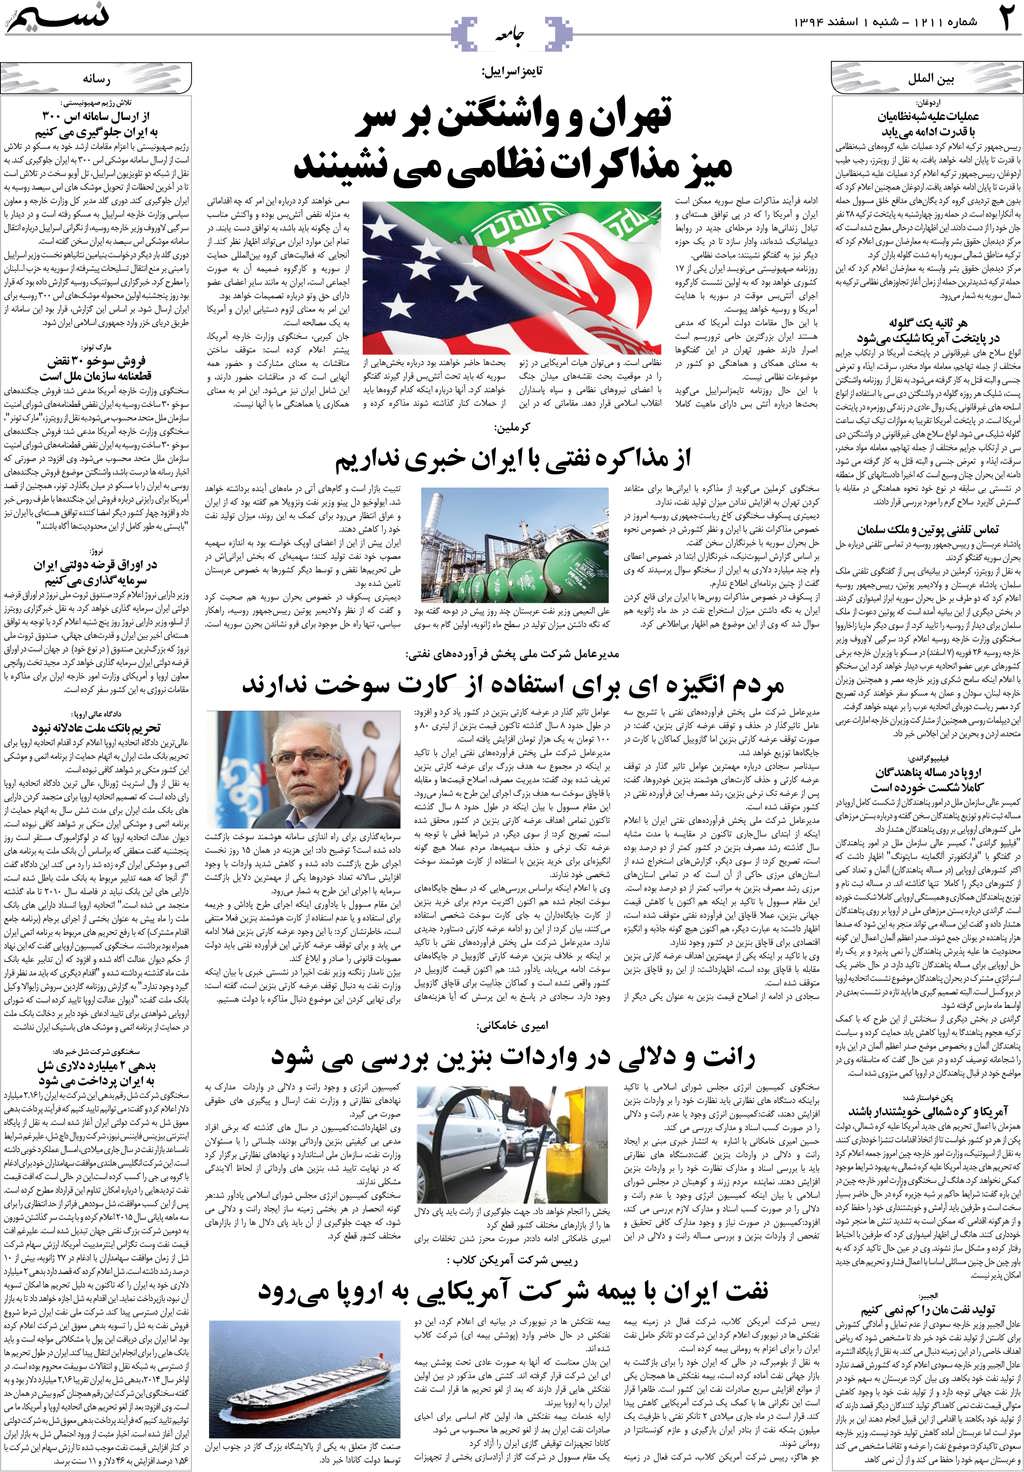 صفحه جامعه روزنامه نسیم شماره 1211